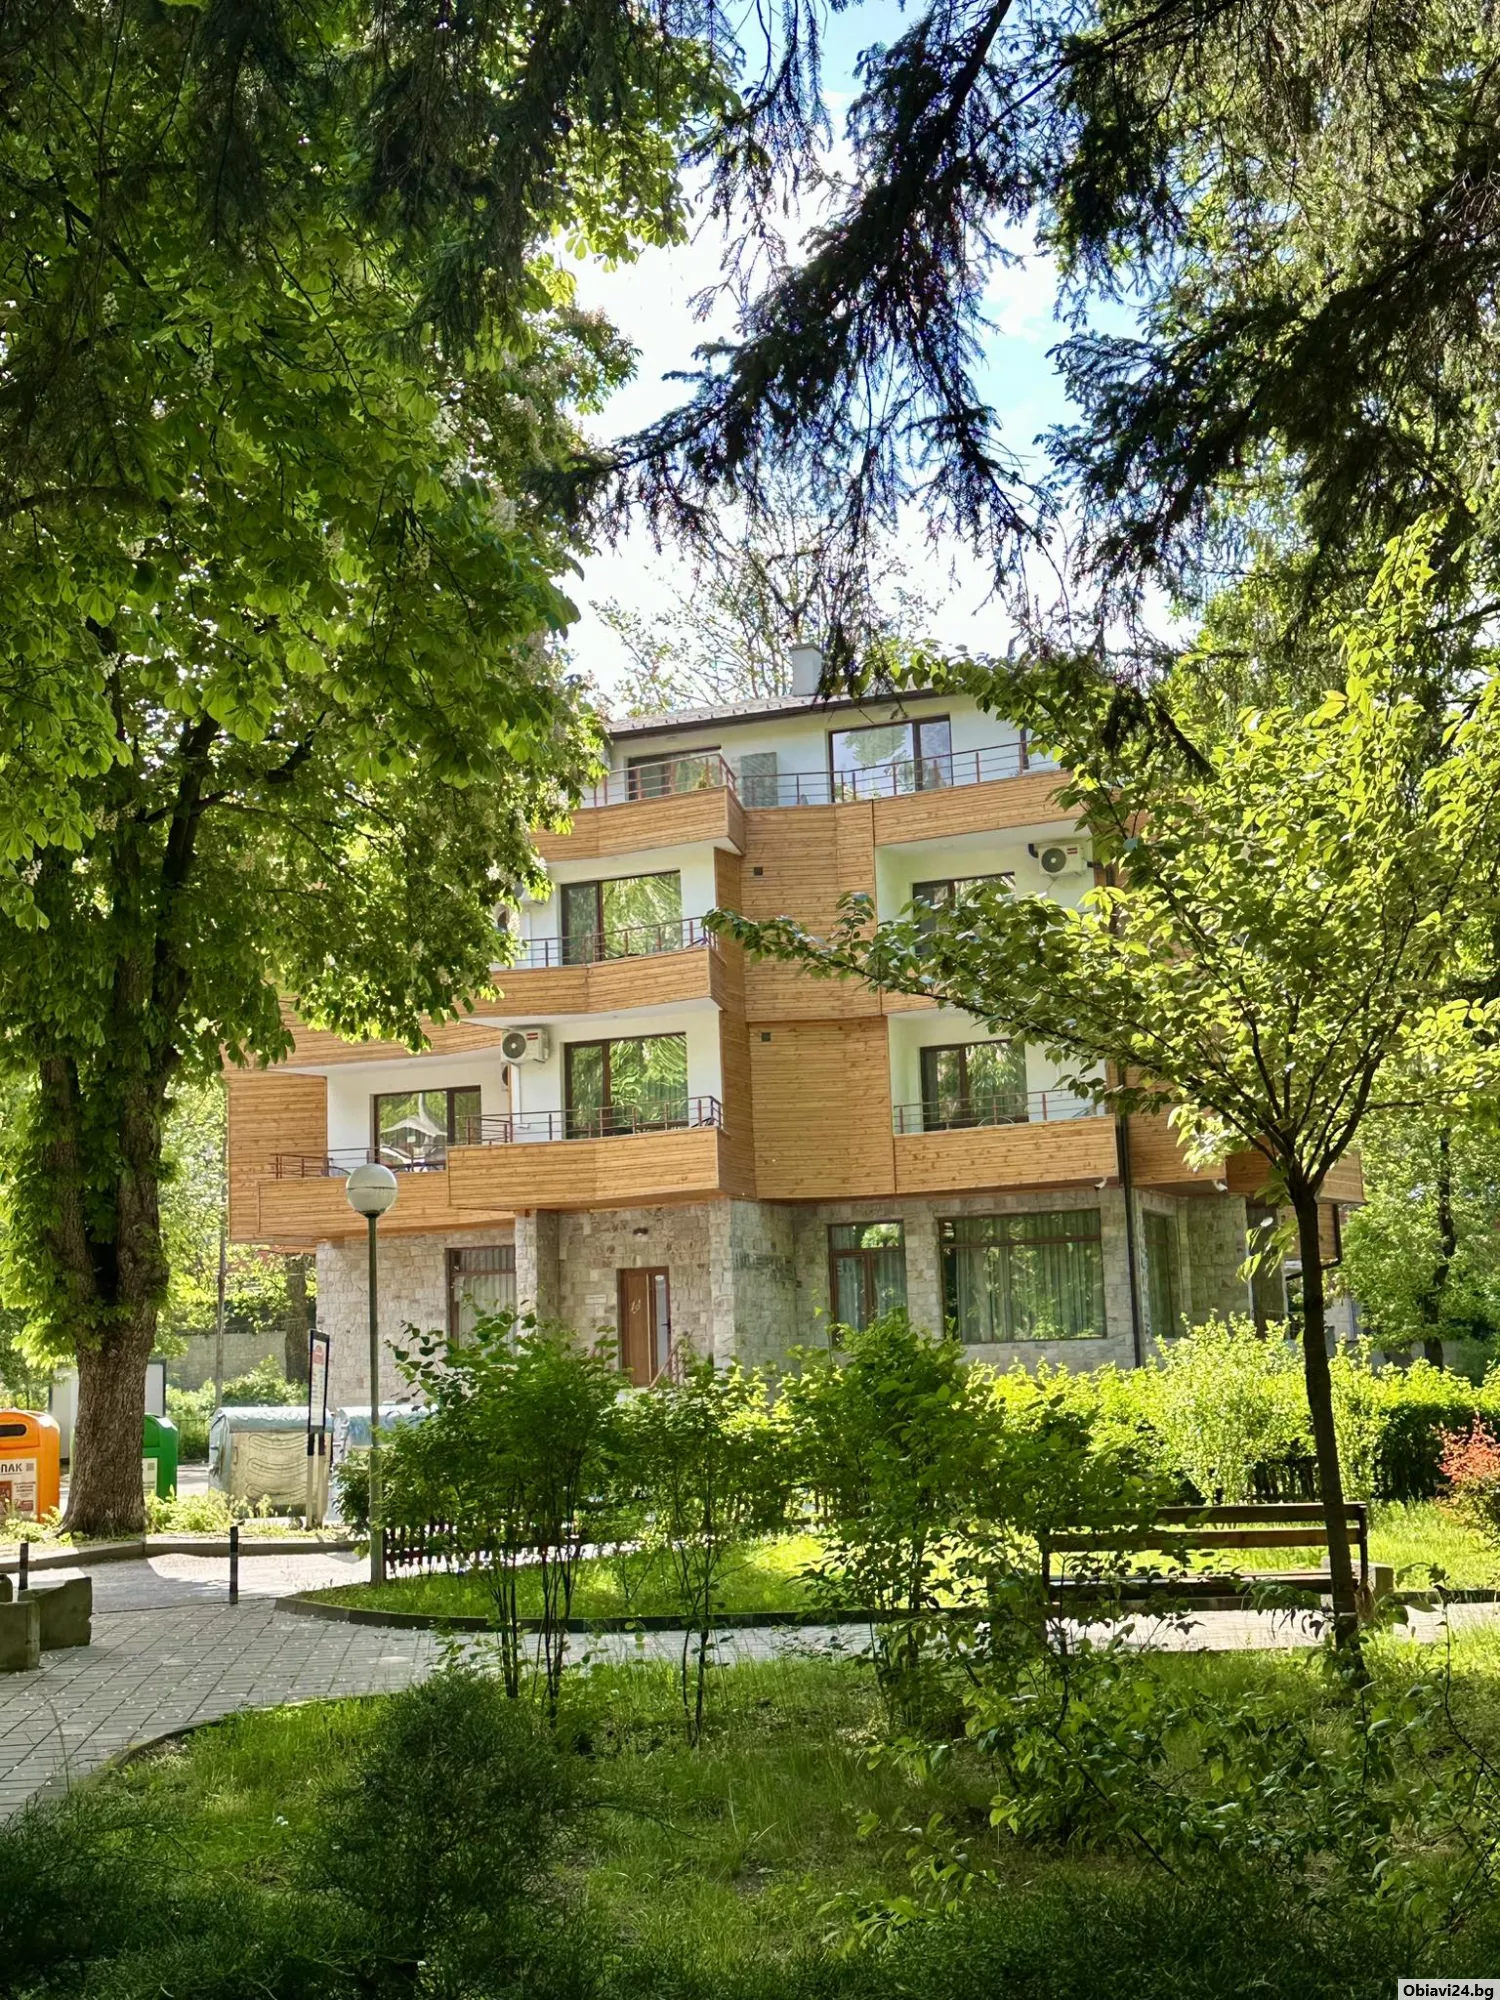 Апартаменти и къщи във Велинград - obiavi24.bg